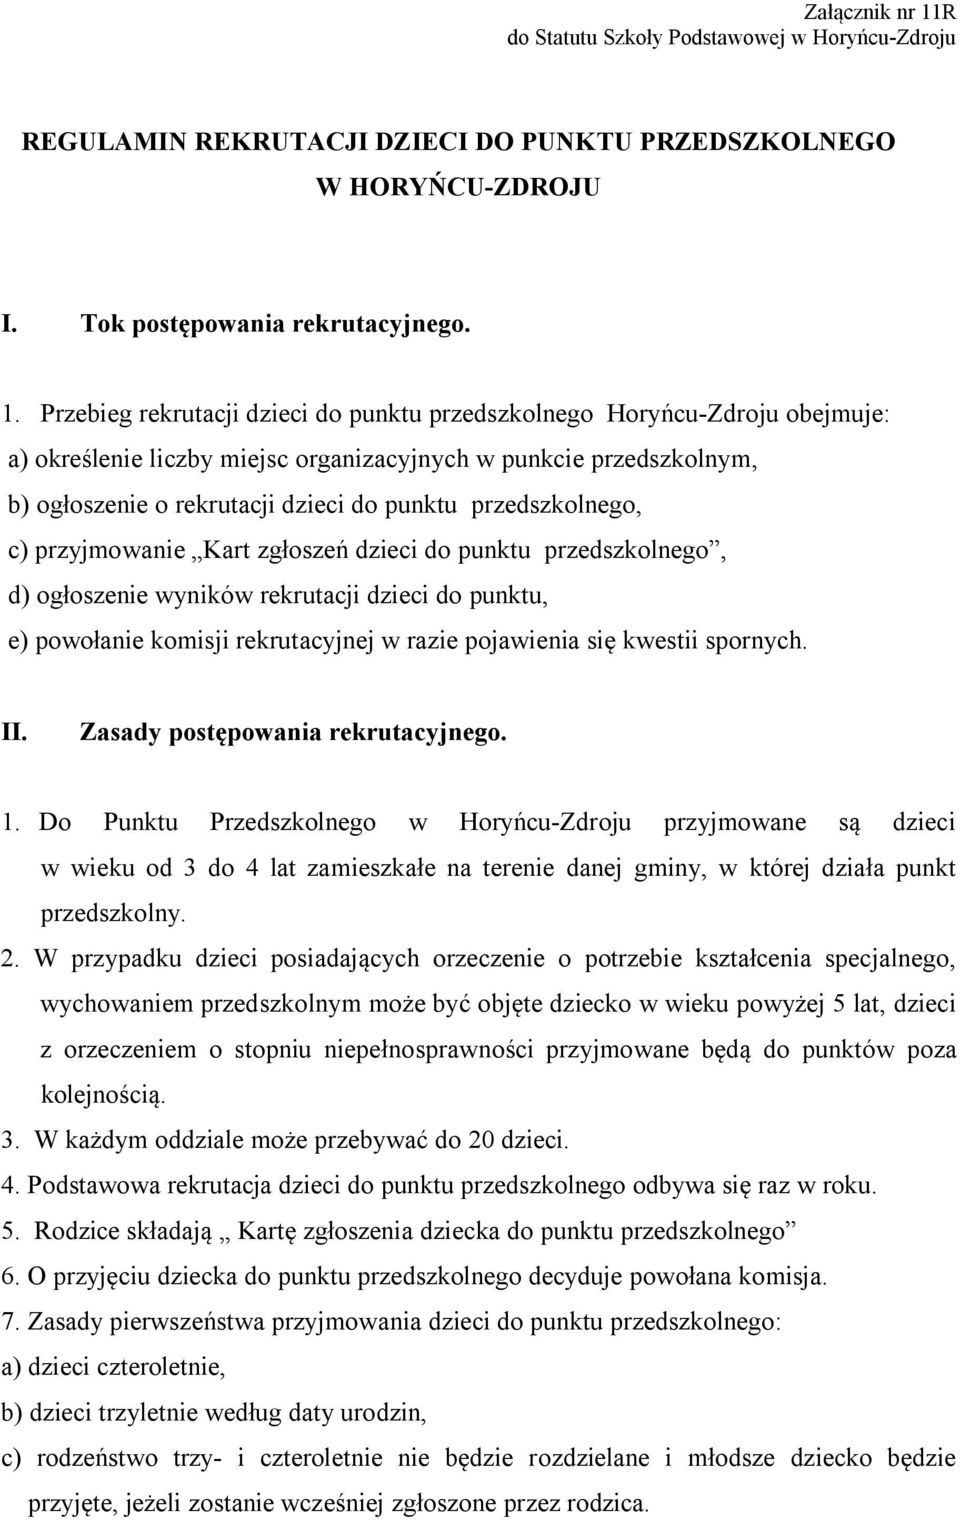 Przebieg rekrutacji dzieci do punktu przedszkolnego Horyńcu-Zdroju obejmuje: a) określenie liczby miejsc organizacyjnych w punkcie przedszkolnym, b) ogłoszenie o rekrutacji dzieci do punktu